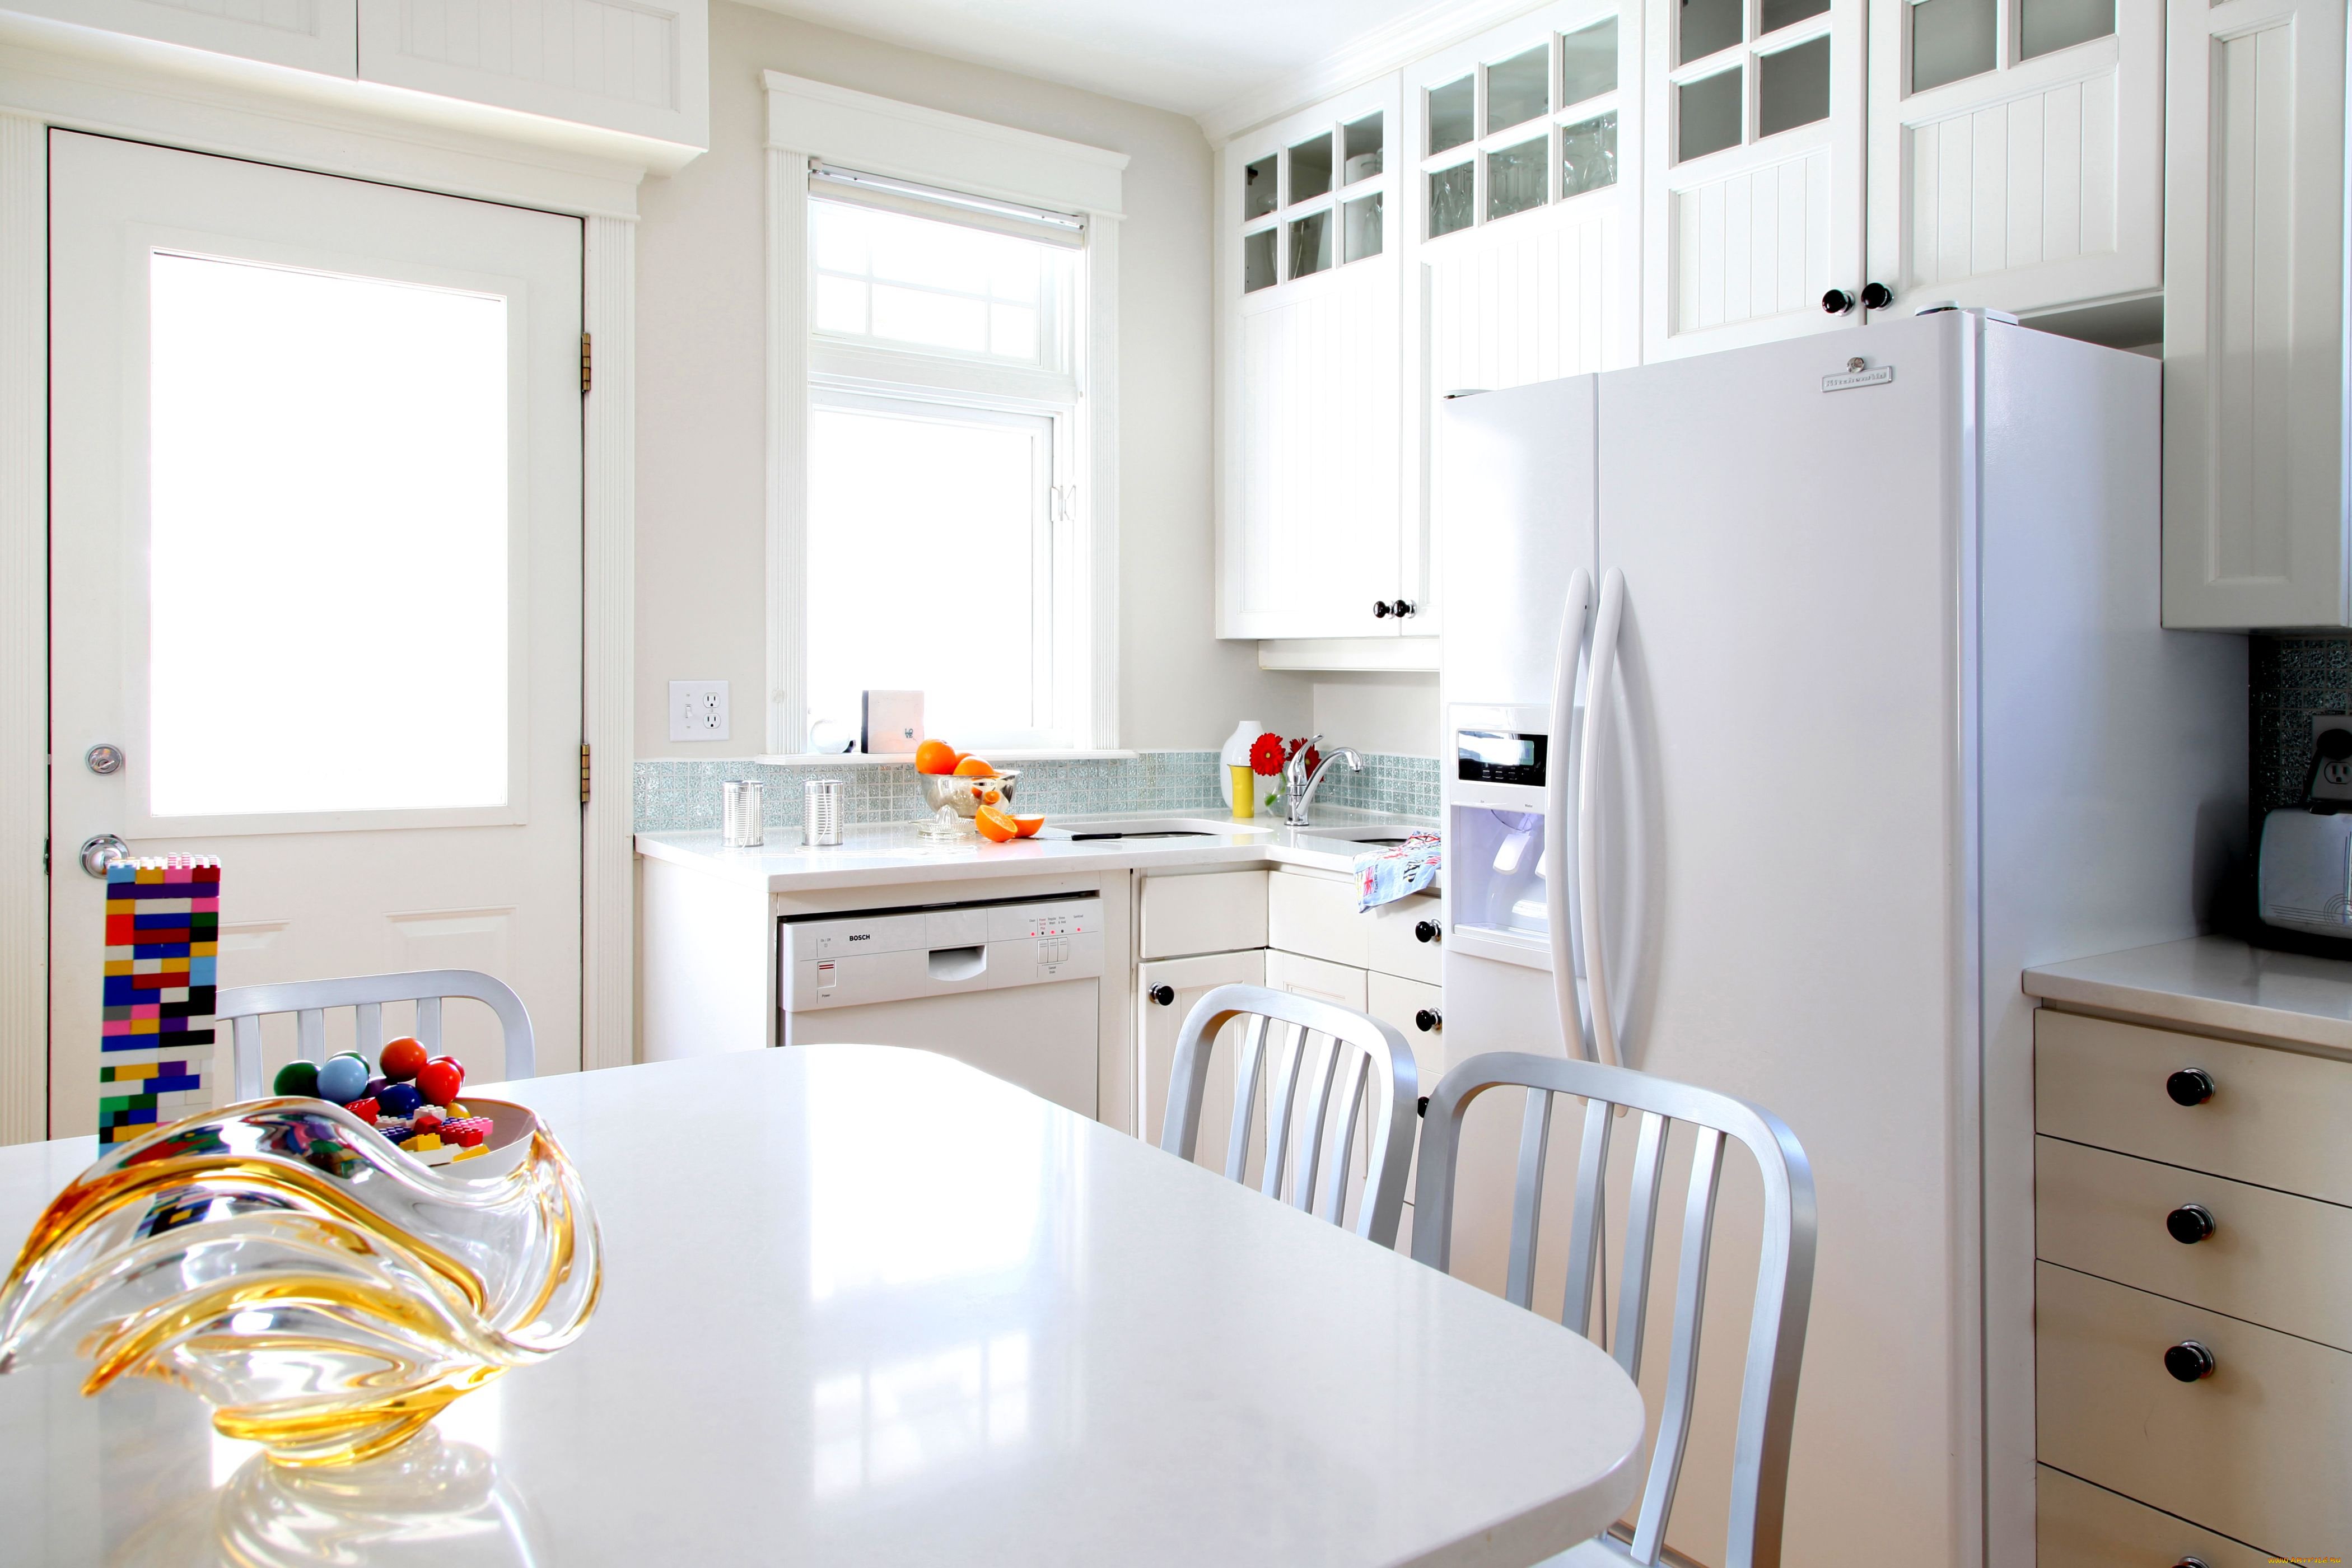 Кухня с холодильником - фото лучших идей как сочетать холодильник в интерьере